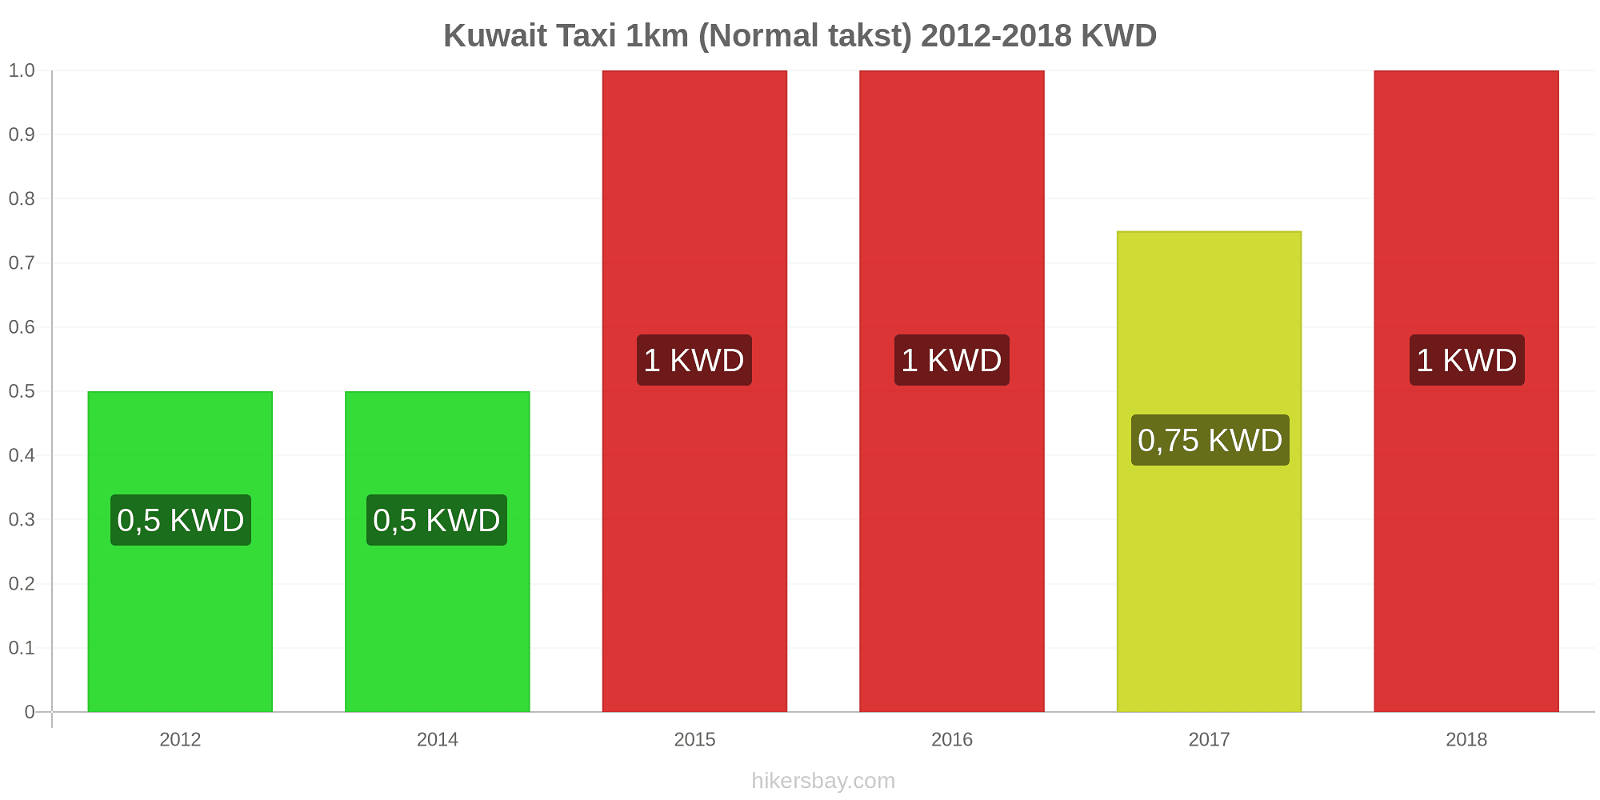 Kuwait prisændringer Taxi 1km (normal takst) hikersbay.com